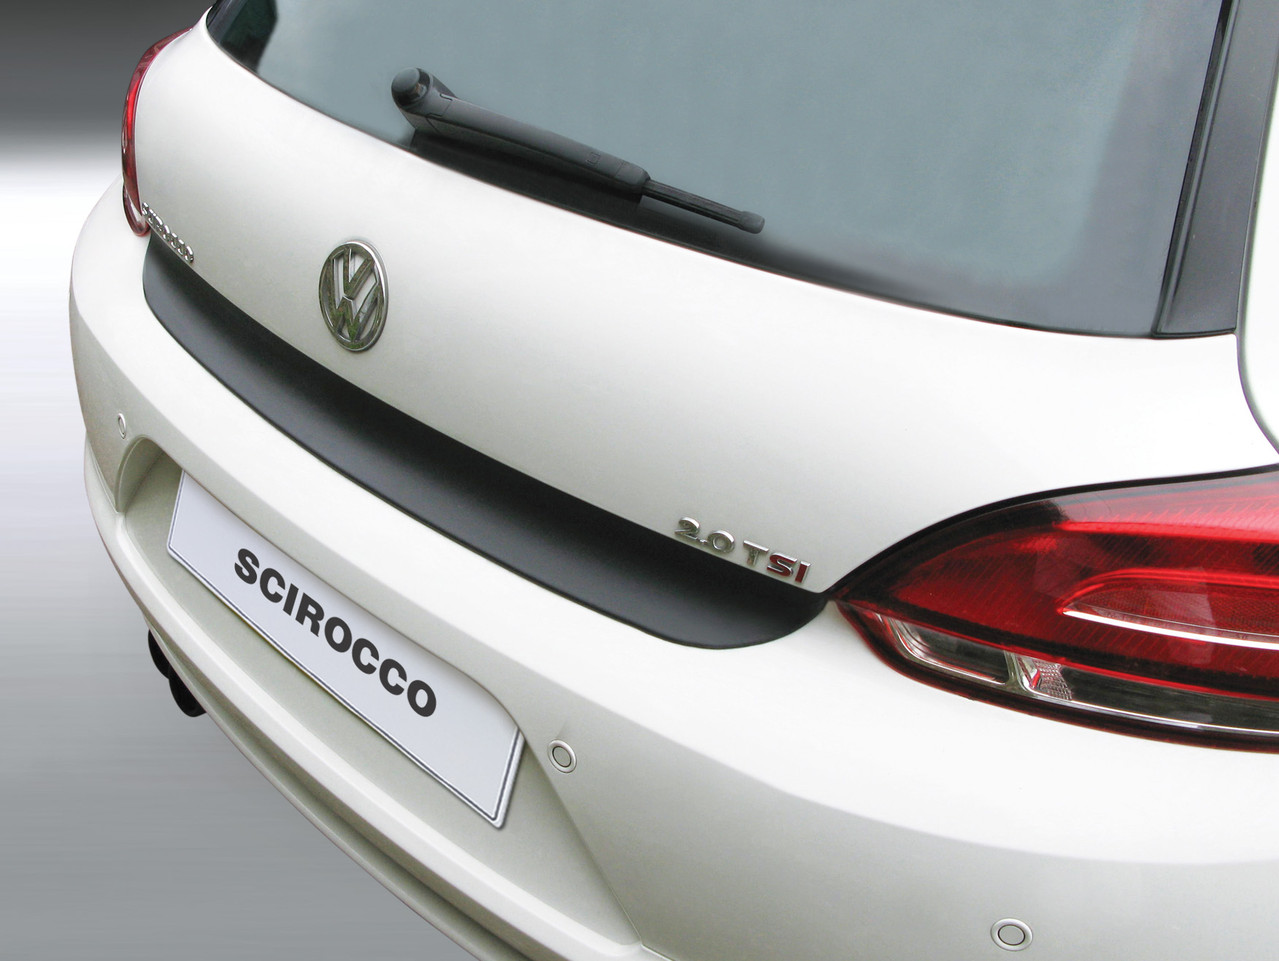 Ladekantenschutz für VW SCIROCCO - Schutz für die Ladekante Ihres Fahrzeuges